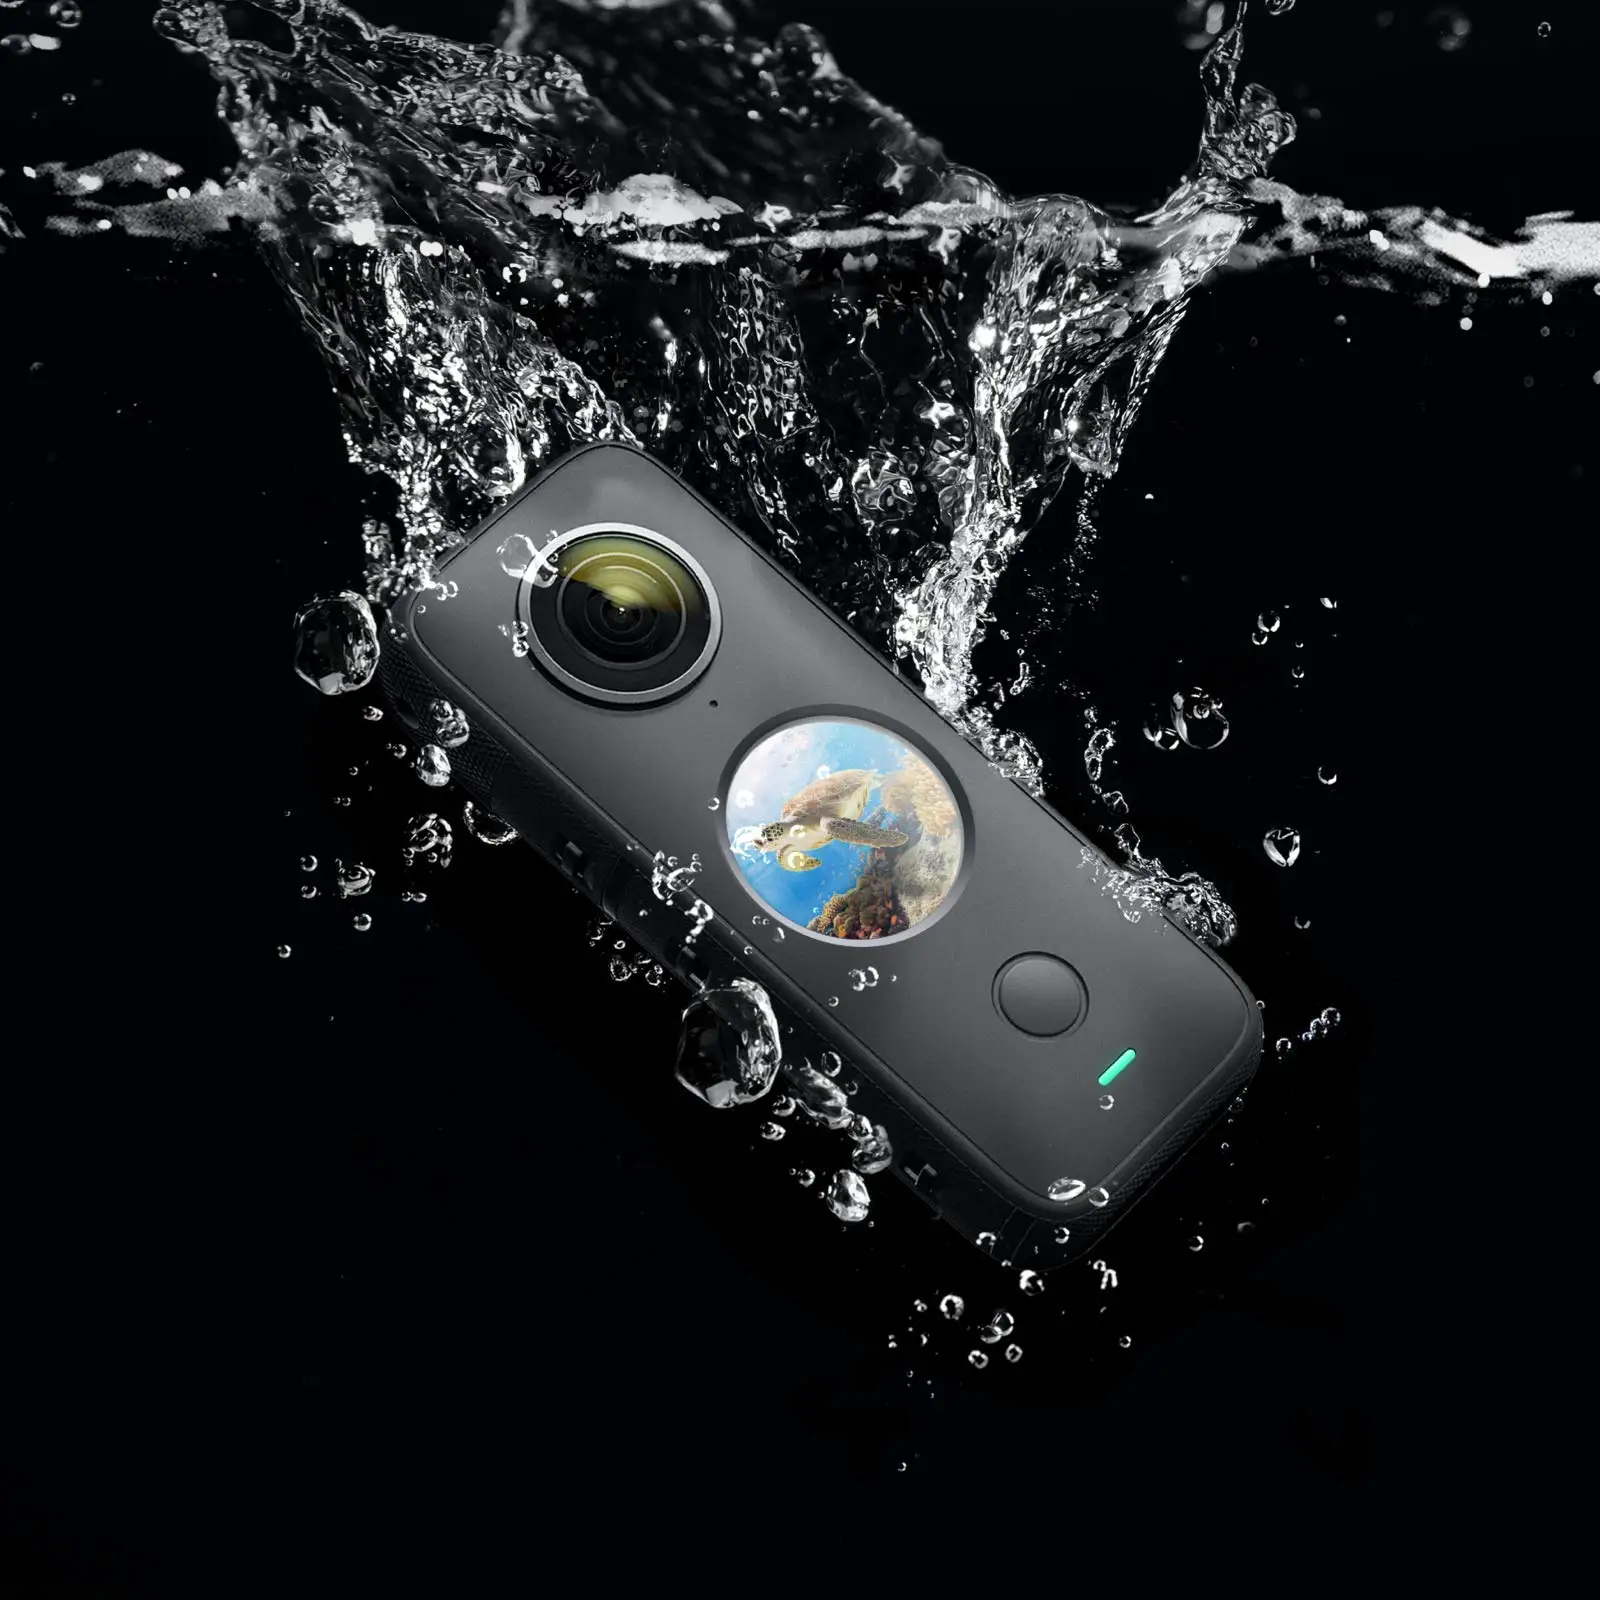 Insta 水中スポーツカメラ,最大 mの防水ソフトデバイス,2つのポケット,プラスサイズのプロテクター